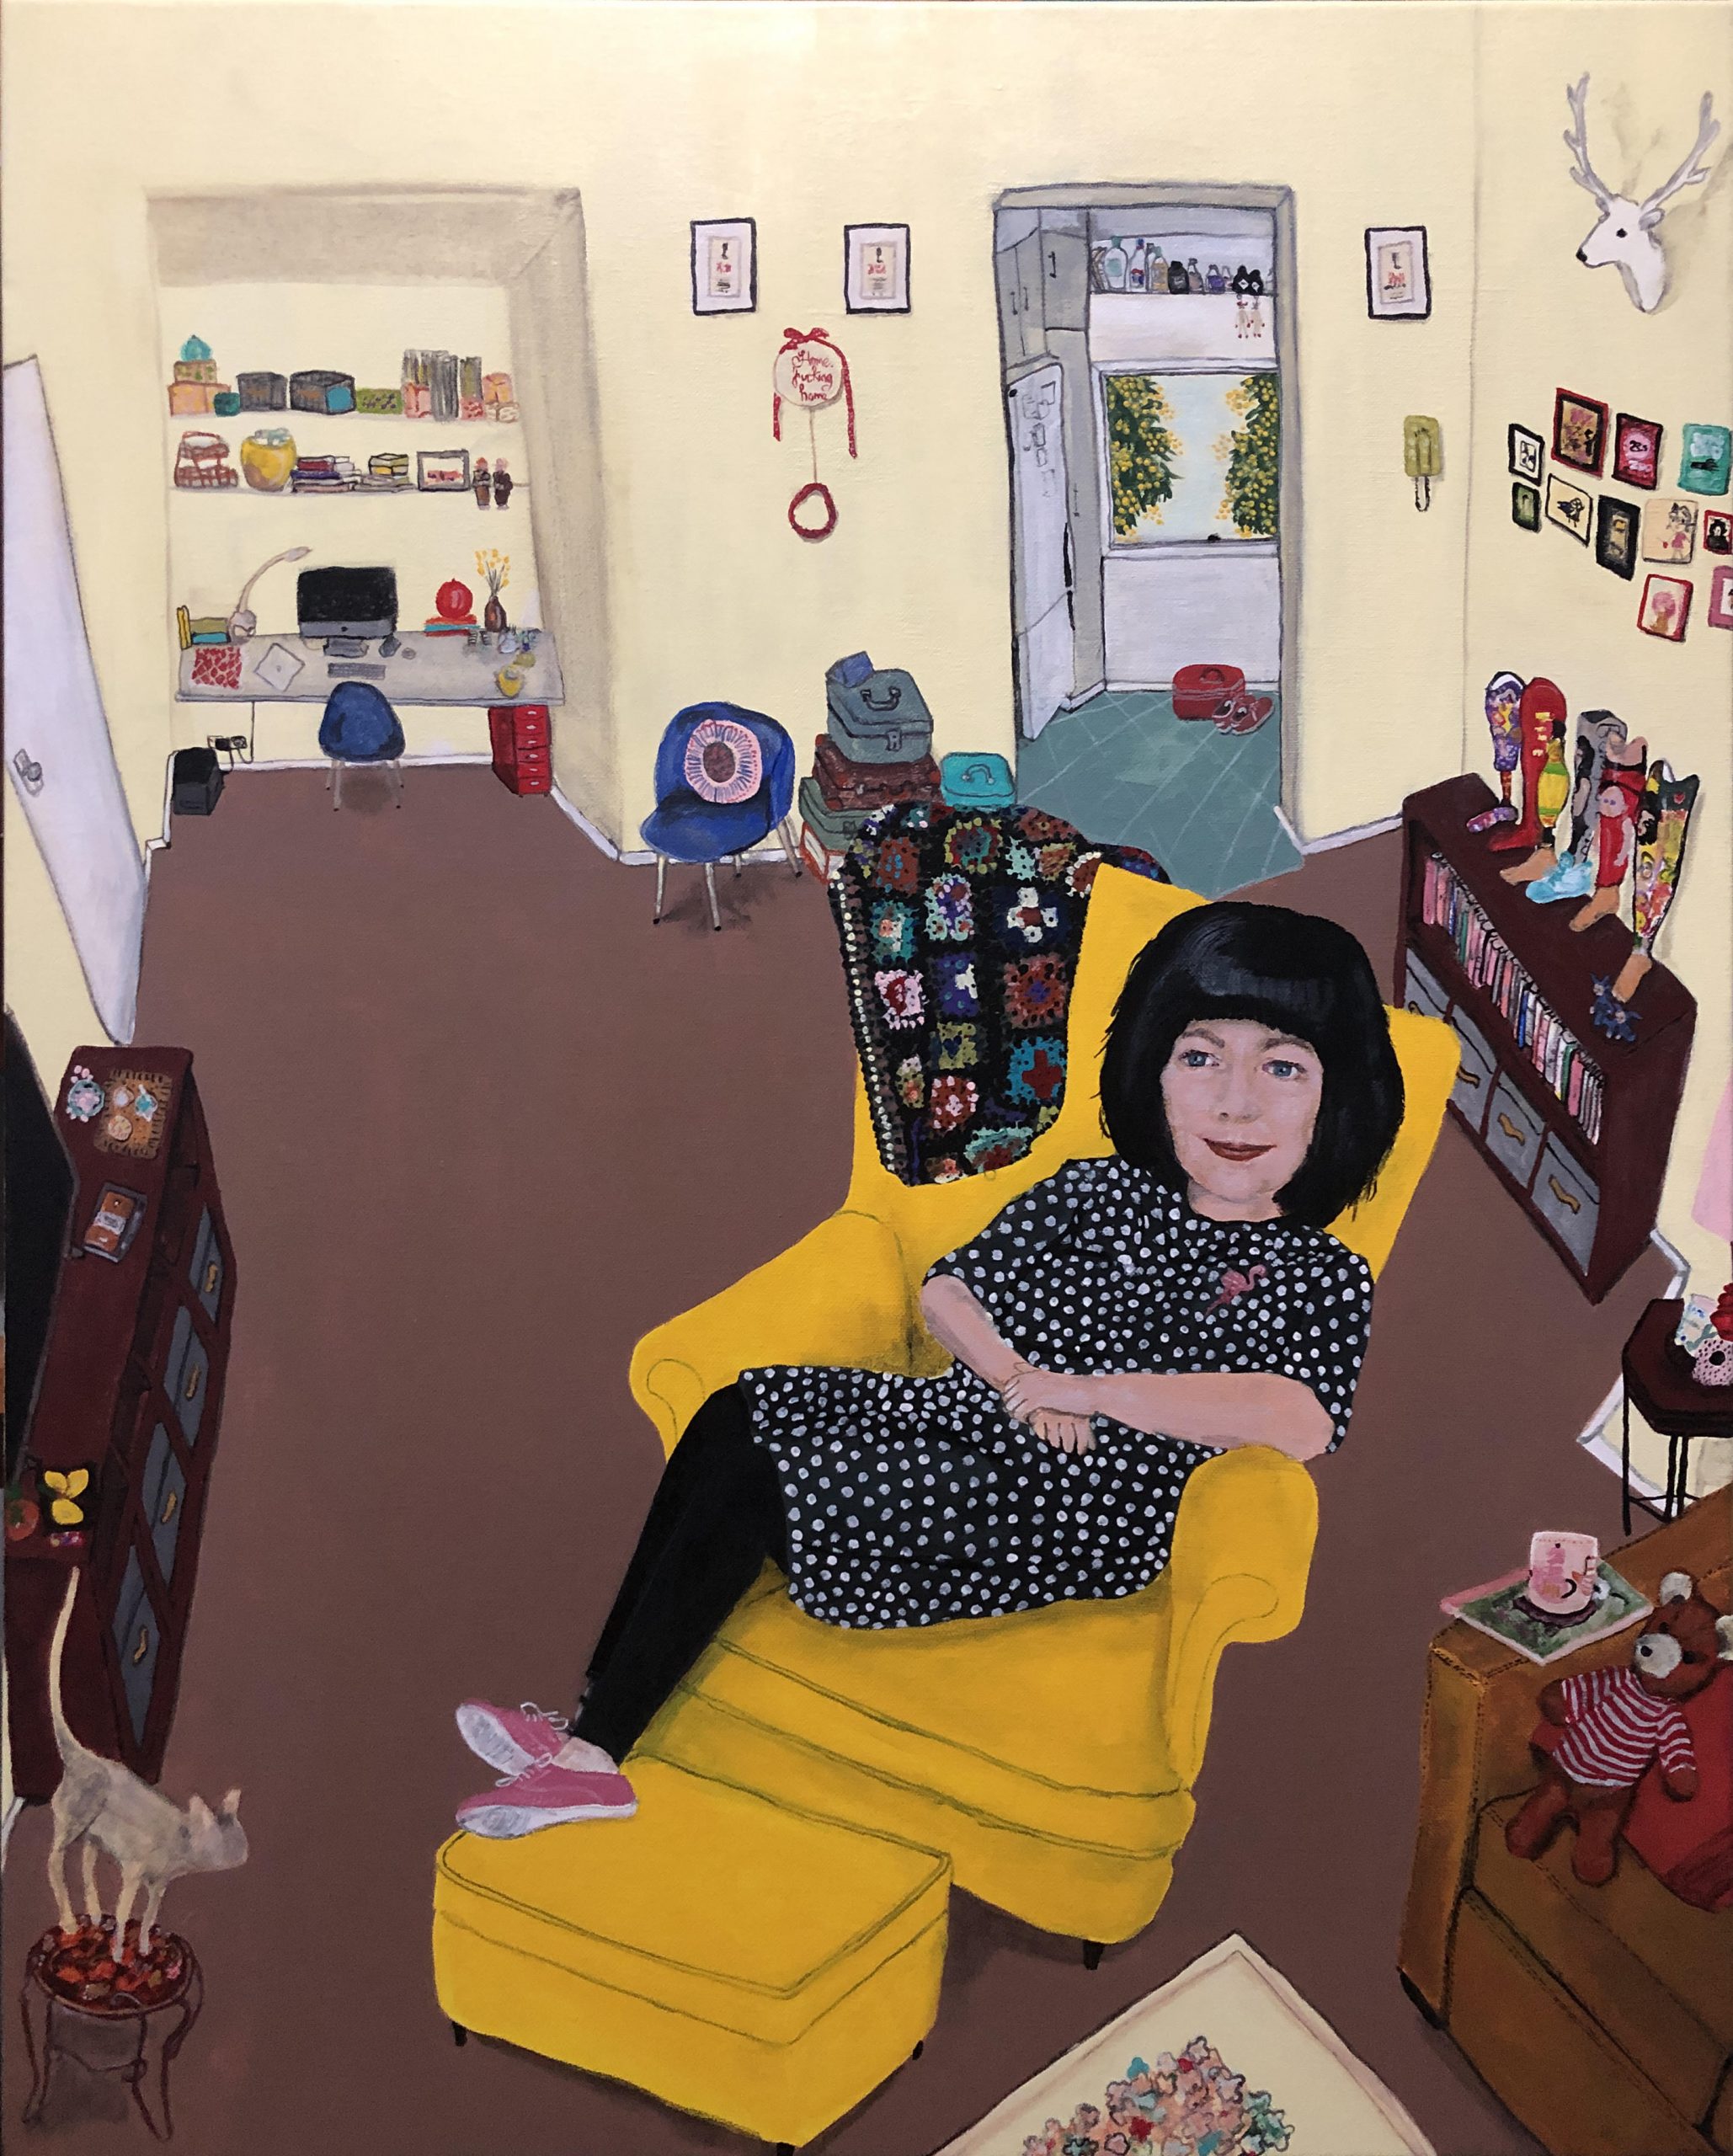 Portrait by Erica Gray, "Priscilla at home", 2020